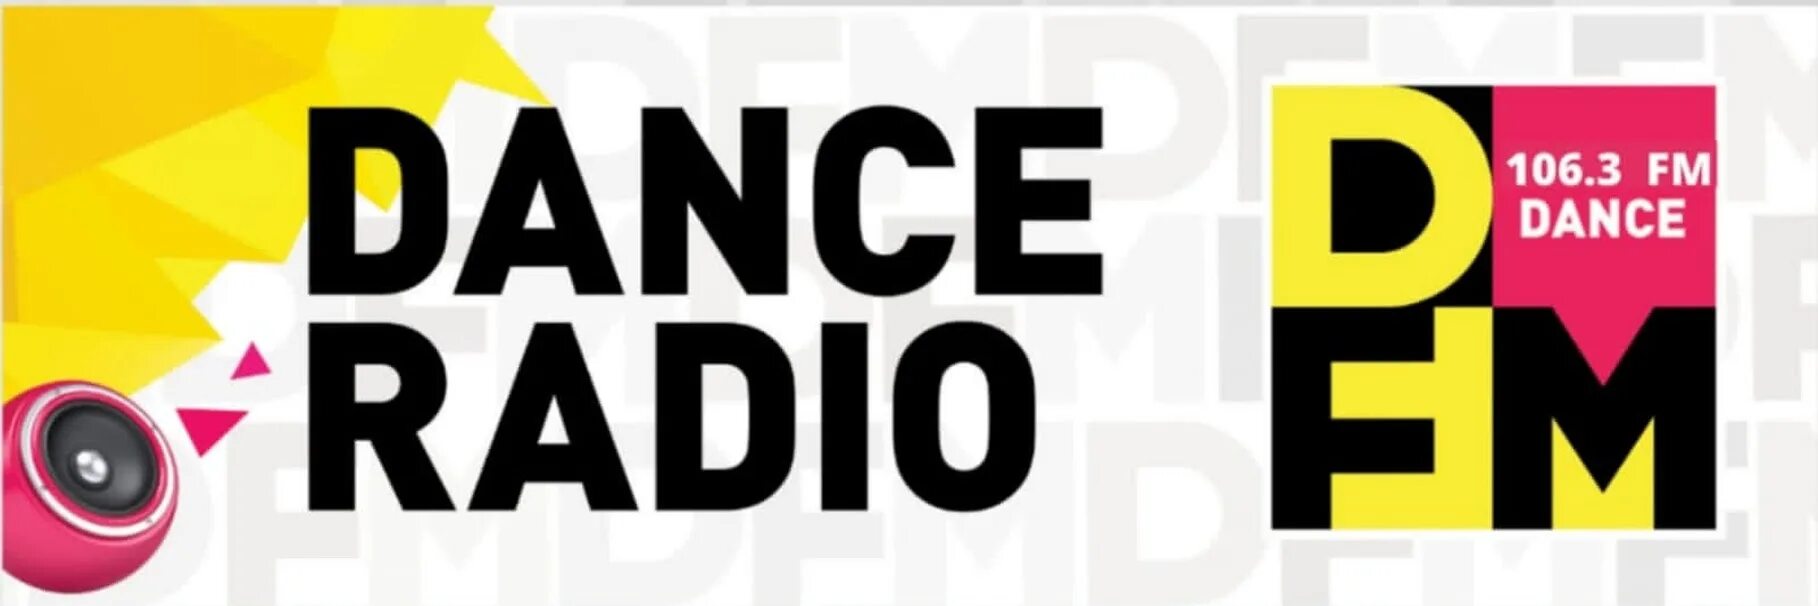 Сайт радиостанции DFM. DFM логотип. Логотипы радиостанций ди ФМ. DFM Dance Radio. Фм радио ди фм в качестве